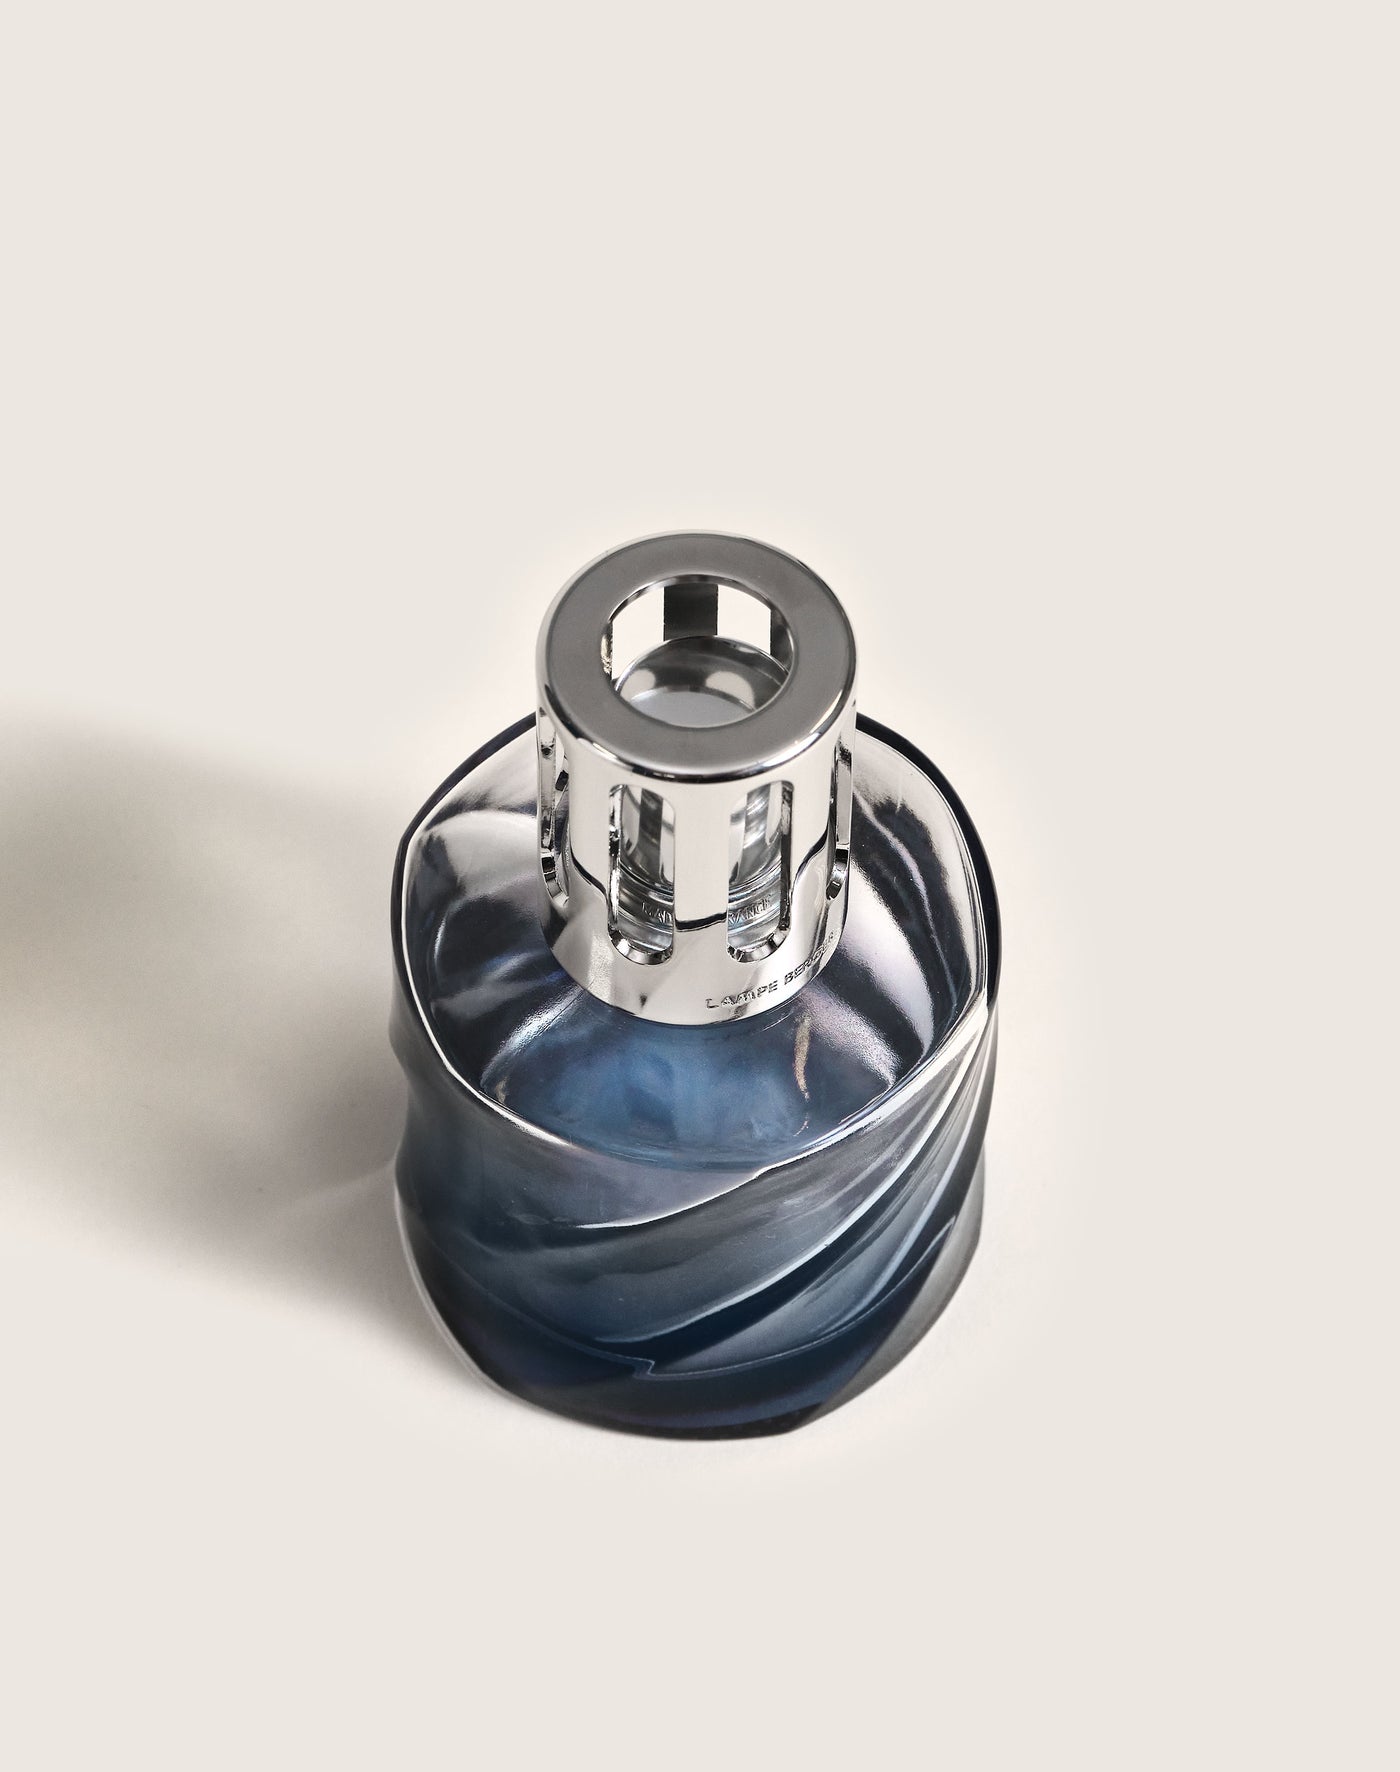 MAISON BERGER, Coffret Lampe Berger Spirale Bleue & parfum Vent d'Océan, Les verts et bleus